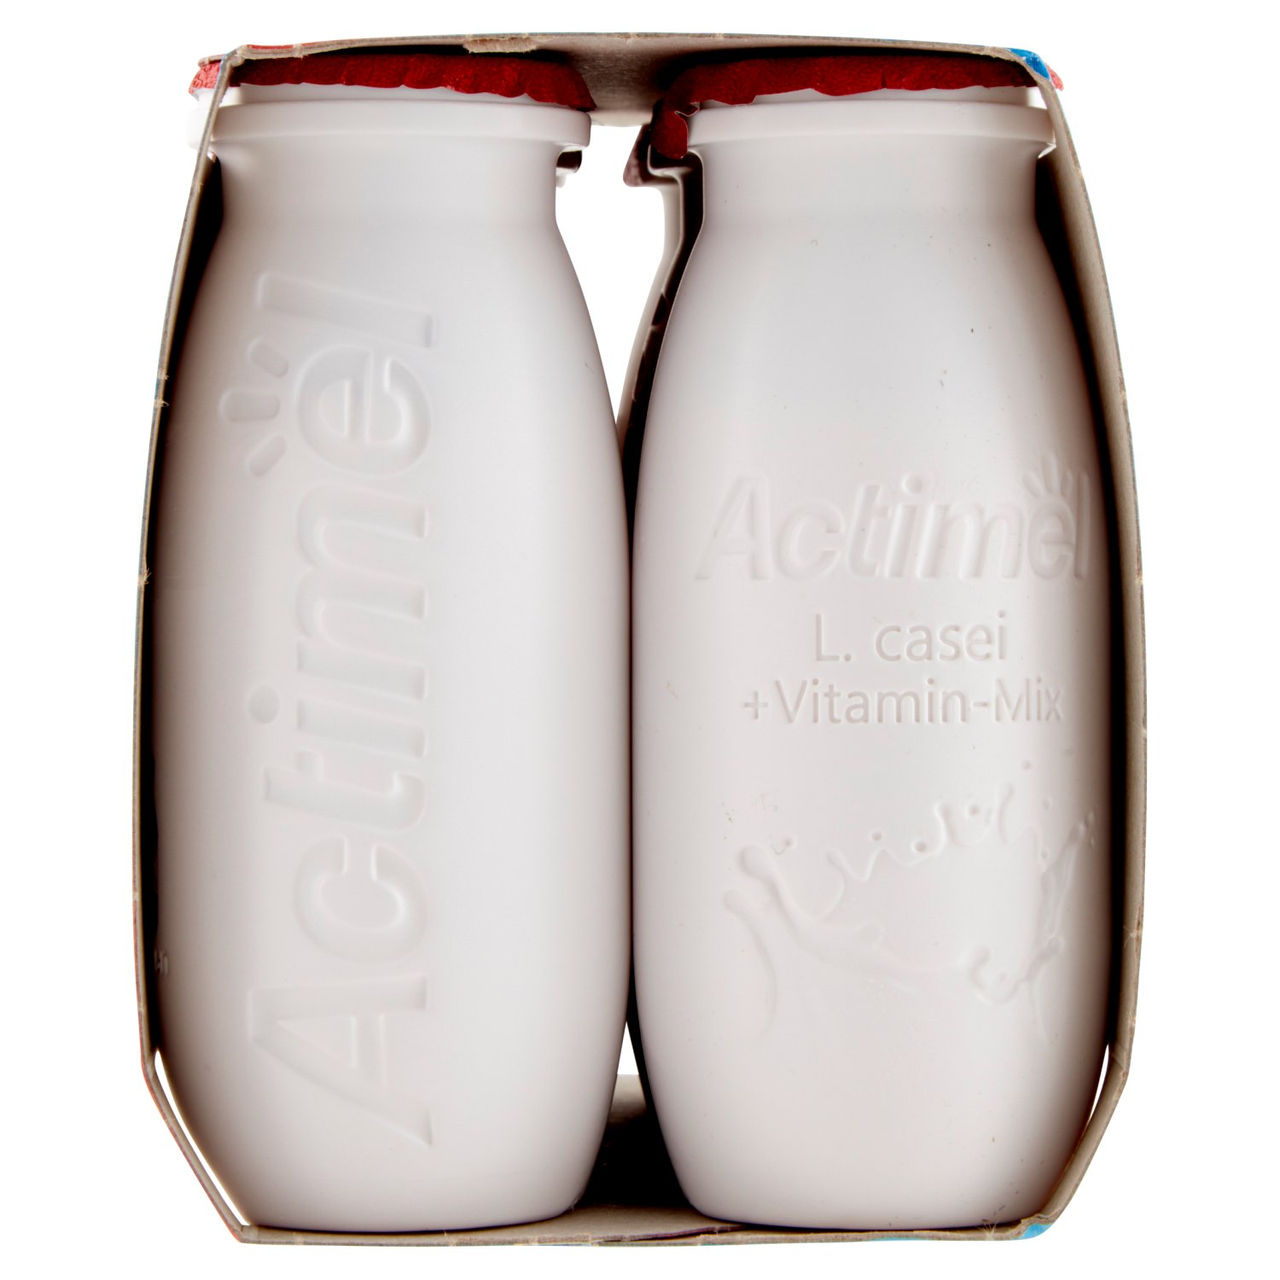 Actimel yogurt da bere arricchito con calcio, vitamina B6 e D, gusto fragola 6 x 100 g